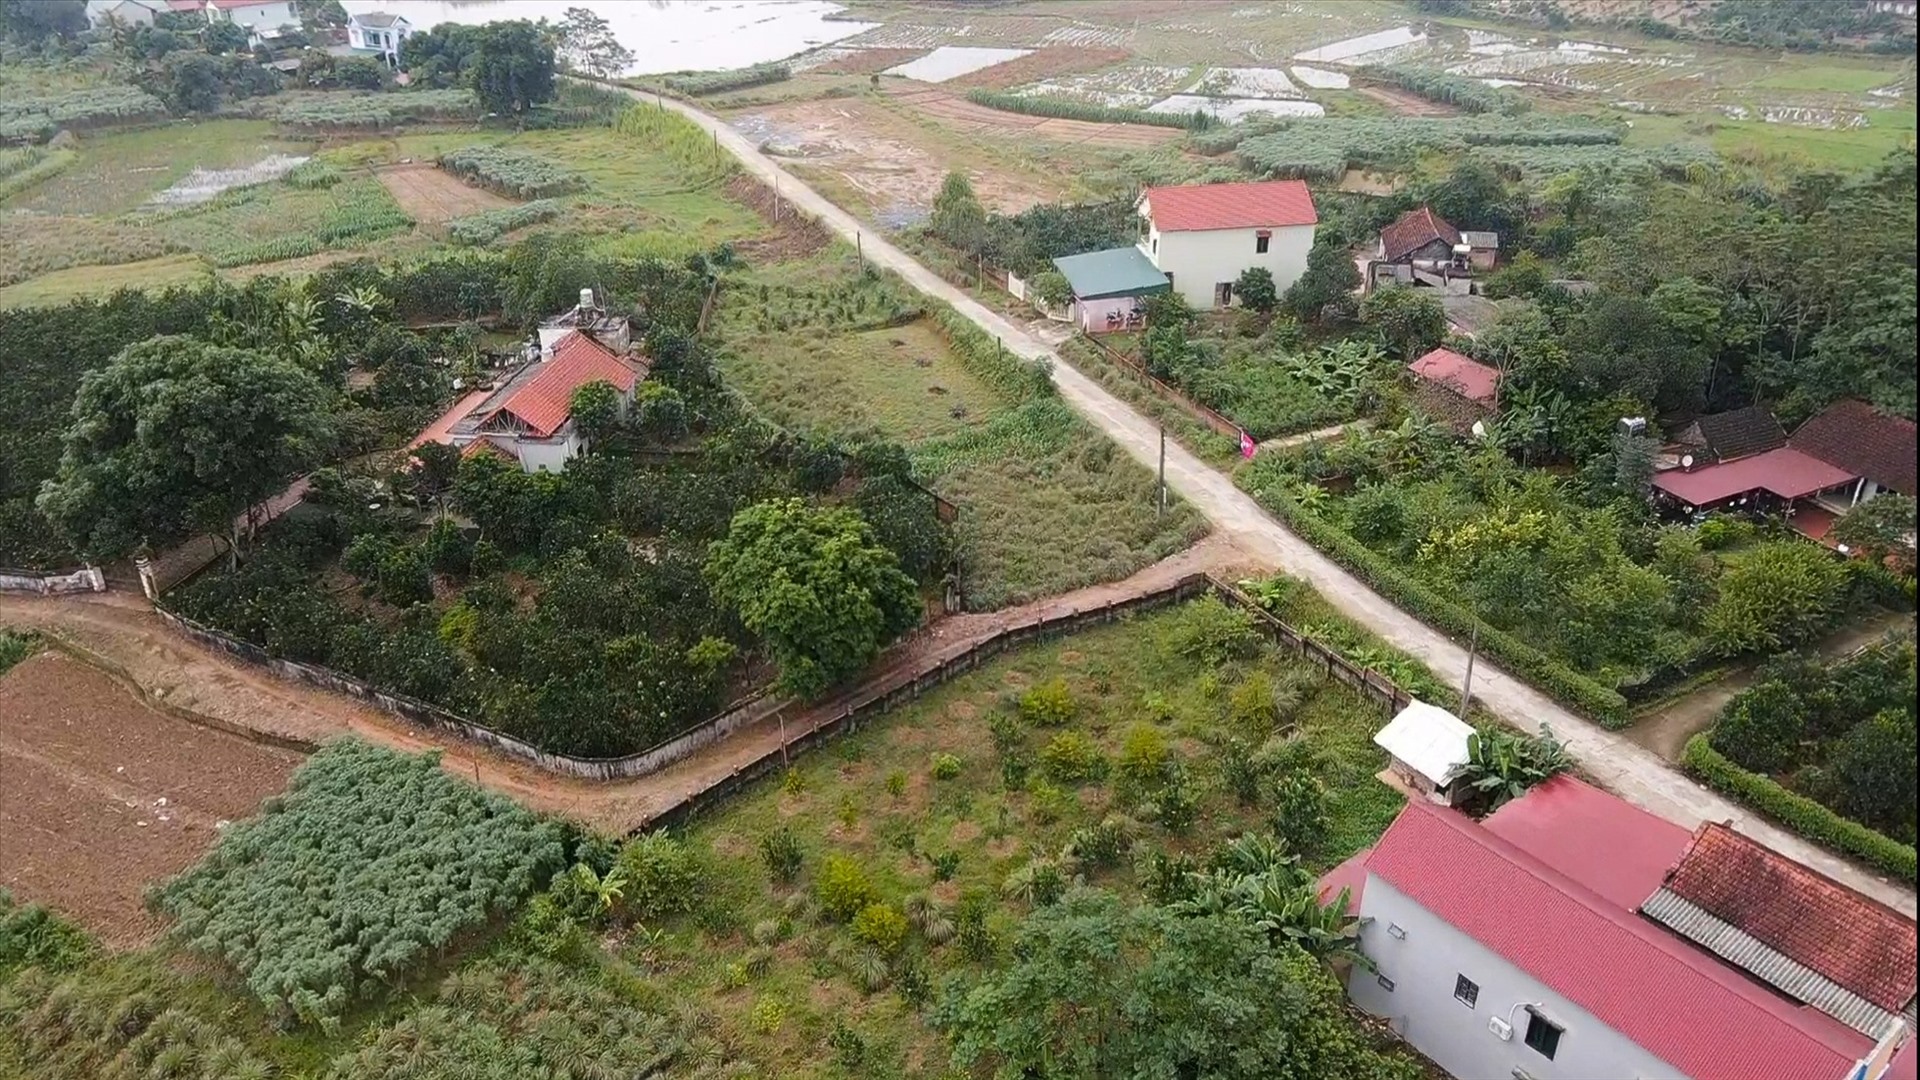 Không chỉ tại Hà Nội, nhiều nhà đầu tư cũng “mắc kẹt” khi đầu cơ đất nền tại các tỉnh lân cận. Ảnh: Phan Anh